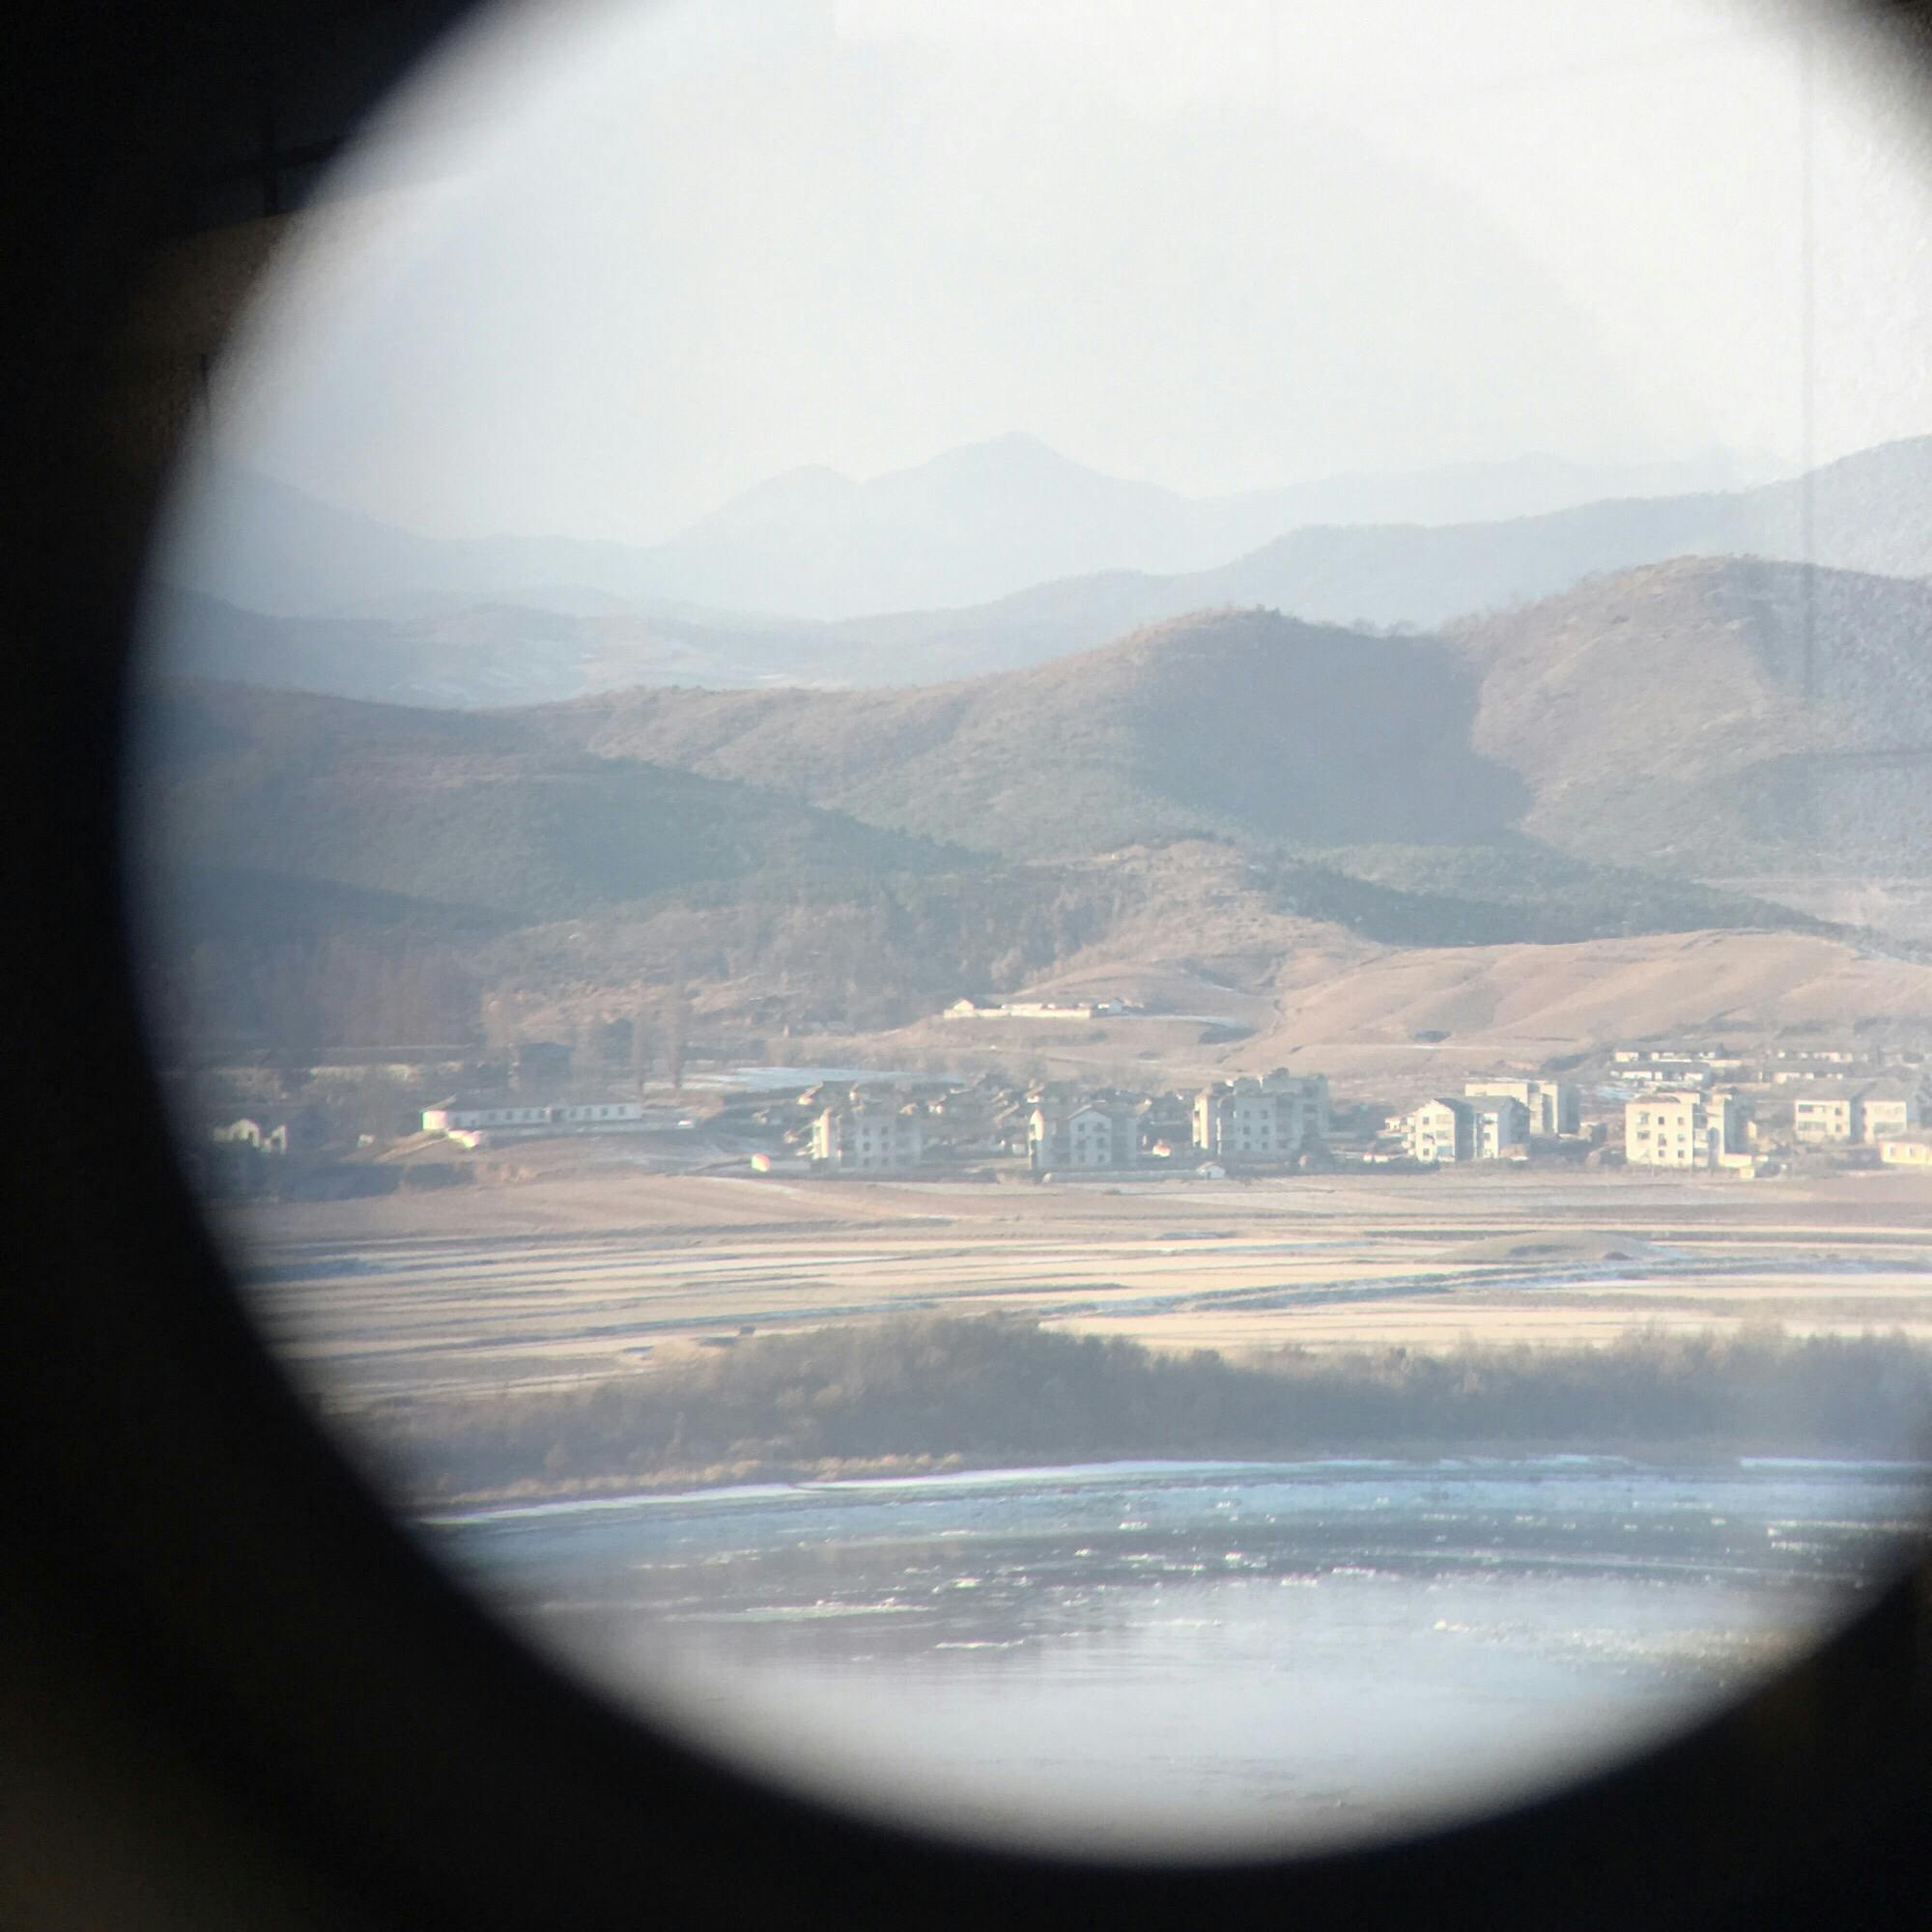 烏頭山統一展望台の投稿写真 感想 みどころ オドゥサン統一展望台望遠鏡をのぞくと 対岸に北朝鮮の村落と トリップノート